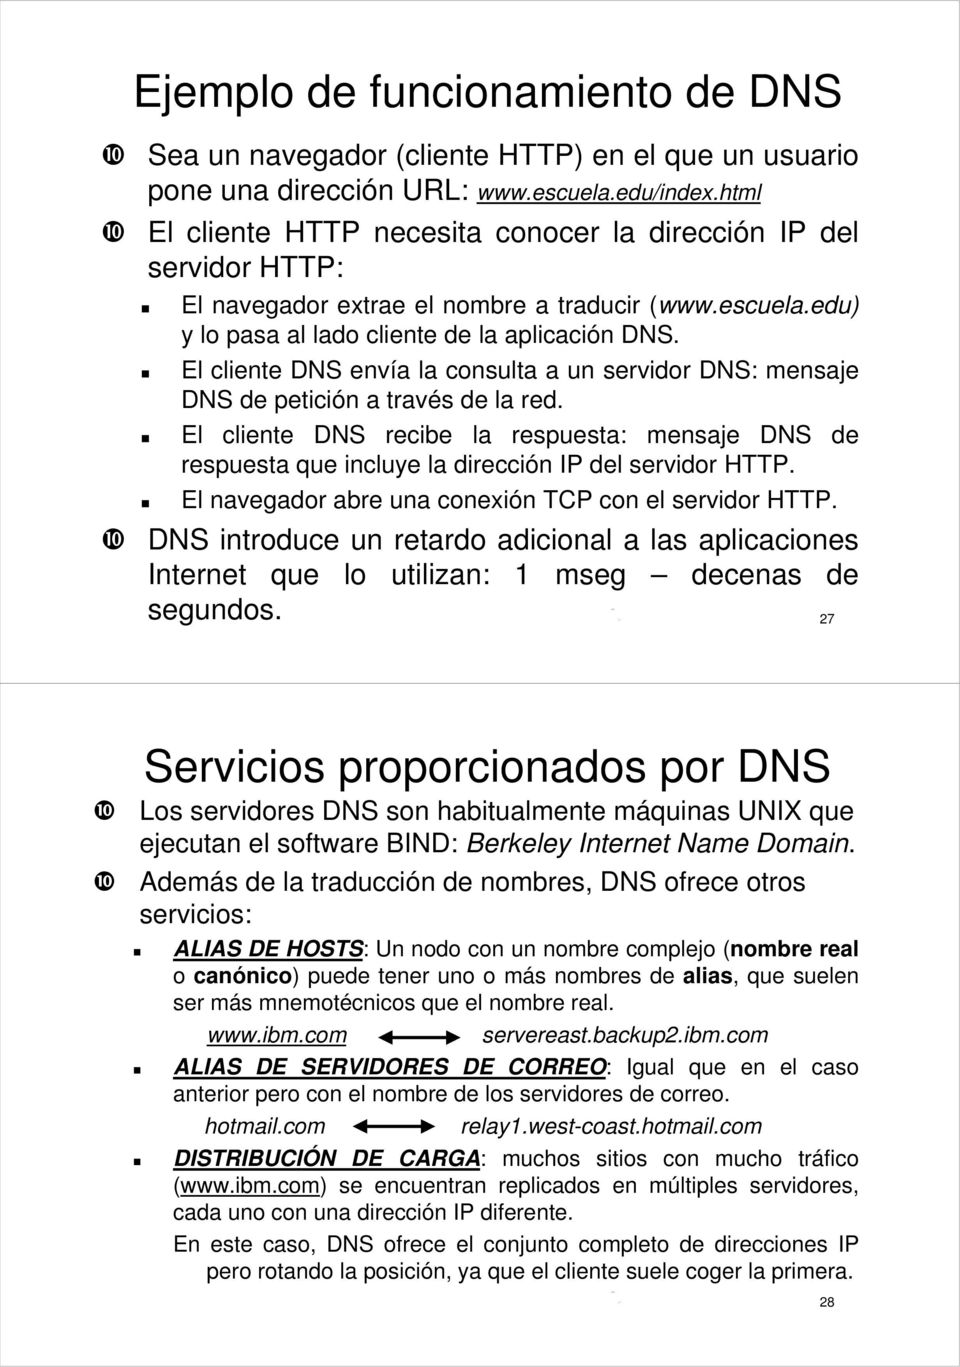 El cliente DNS envía la consulta a un servidor DNS: mensaje DNS de petición a través de la red.